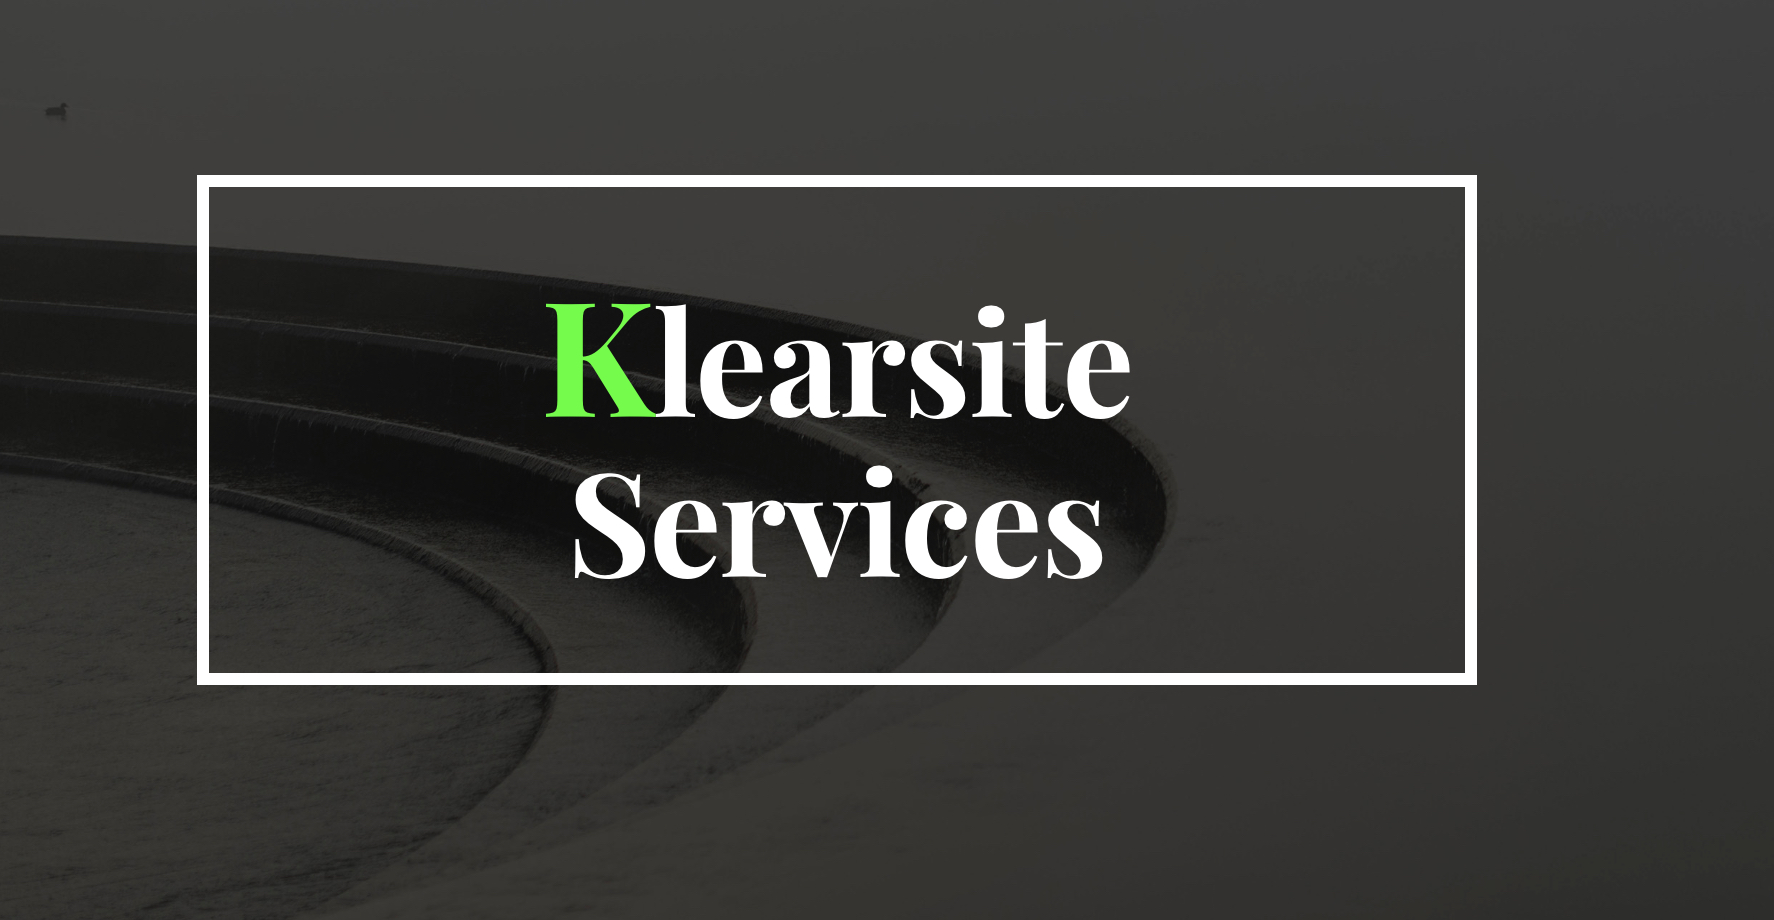  Klearsite Services - San Antonio TX logo